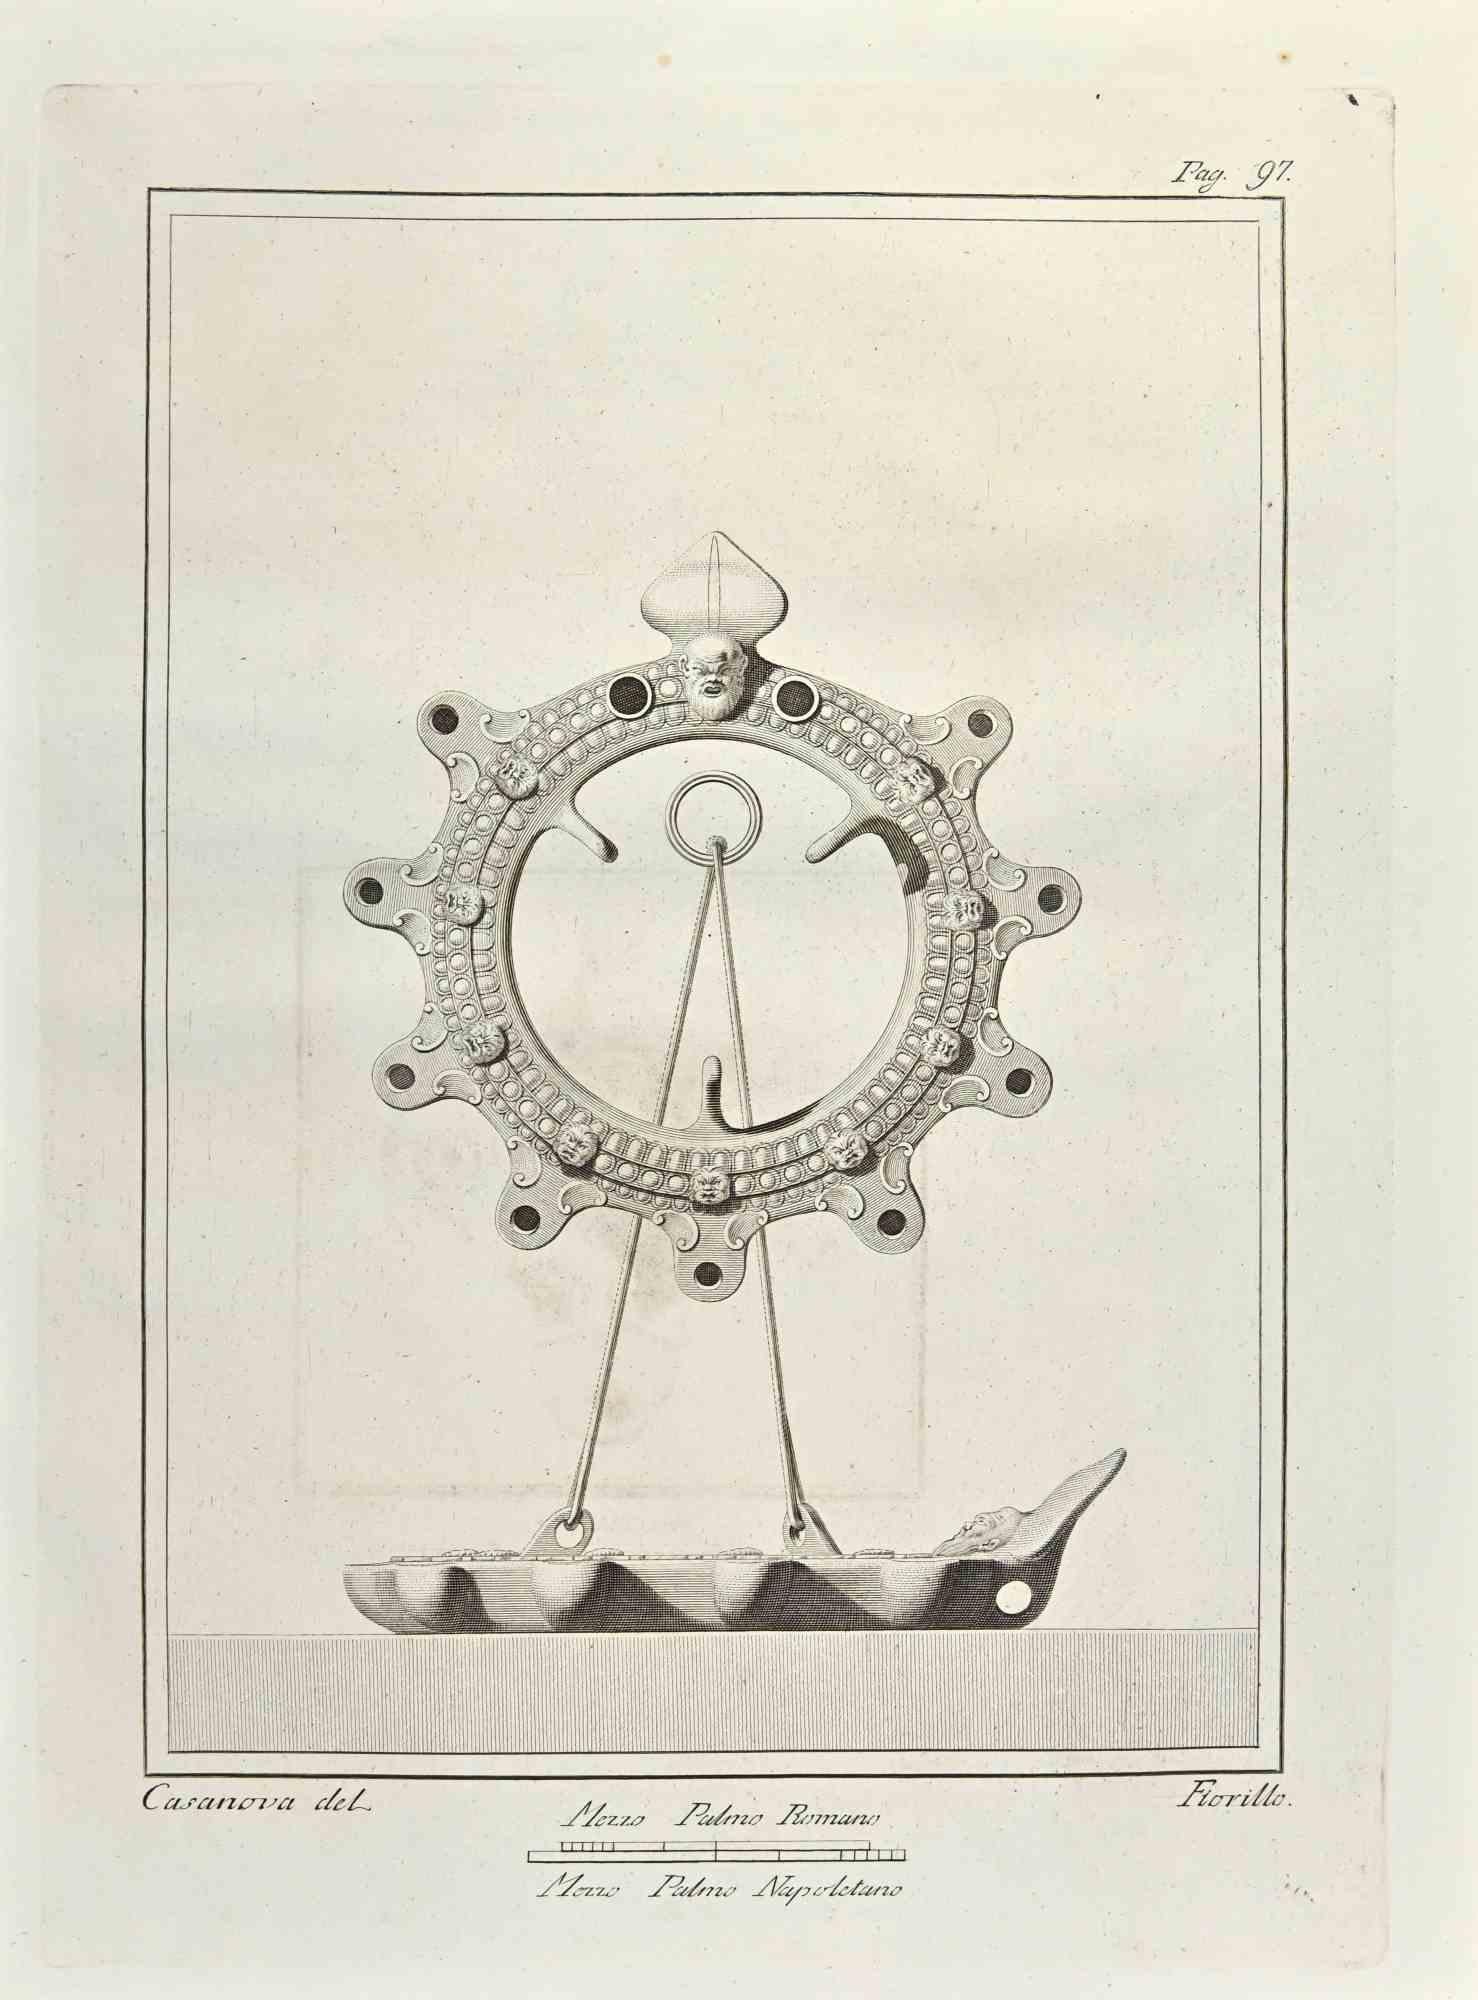 Öllampen  "Sonne und Boot" aus den "Altertümern von Herculaneum" ist eine Radierung auf Papier von Nicola Fiorillo aus dem 18.

Signiert auf der Platte.

Gute Bedingungen.

Die Radierung gehört zu der Druckserie "Antiquities of Herculaneum Exposed"